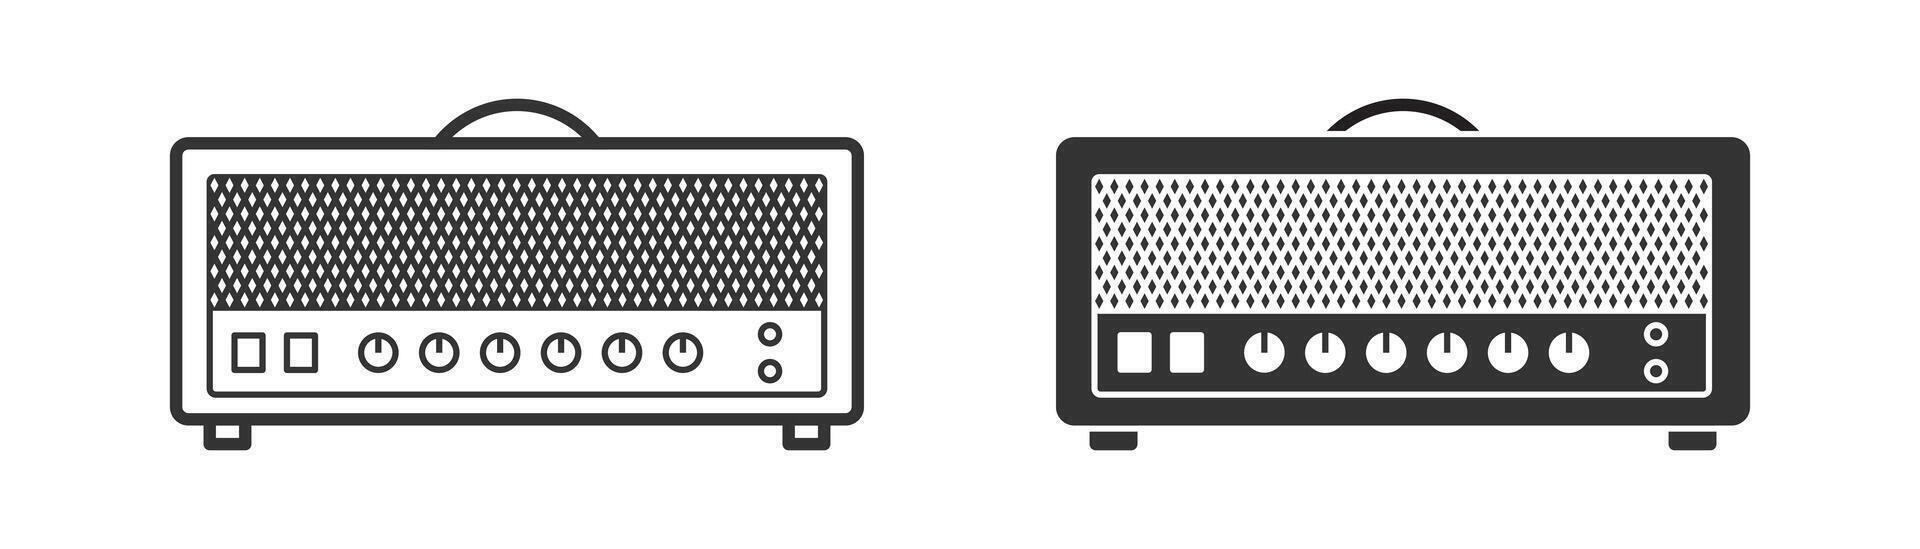 Guitar amplifier head icon. Vector illustration.